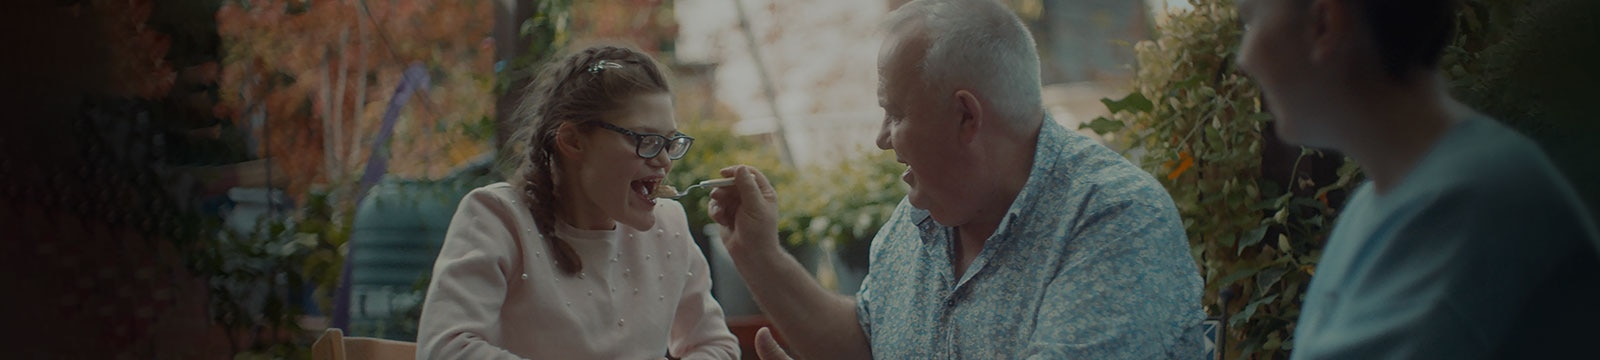 Assis à l’extérieur, un homme souriant nourrit sa fille adolescente.